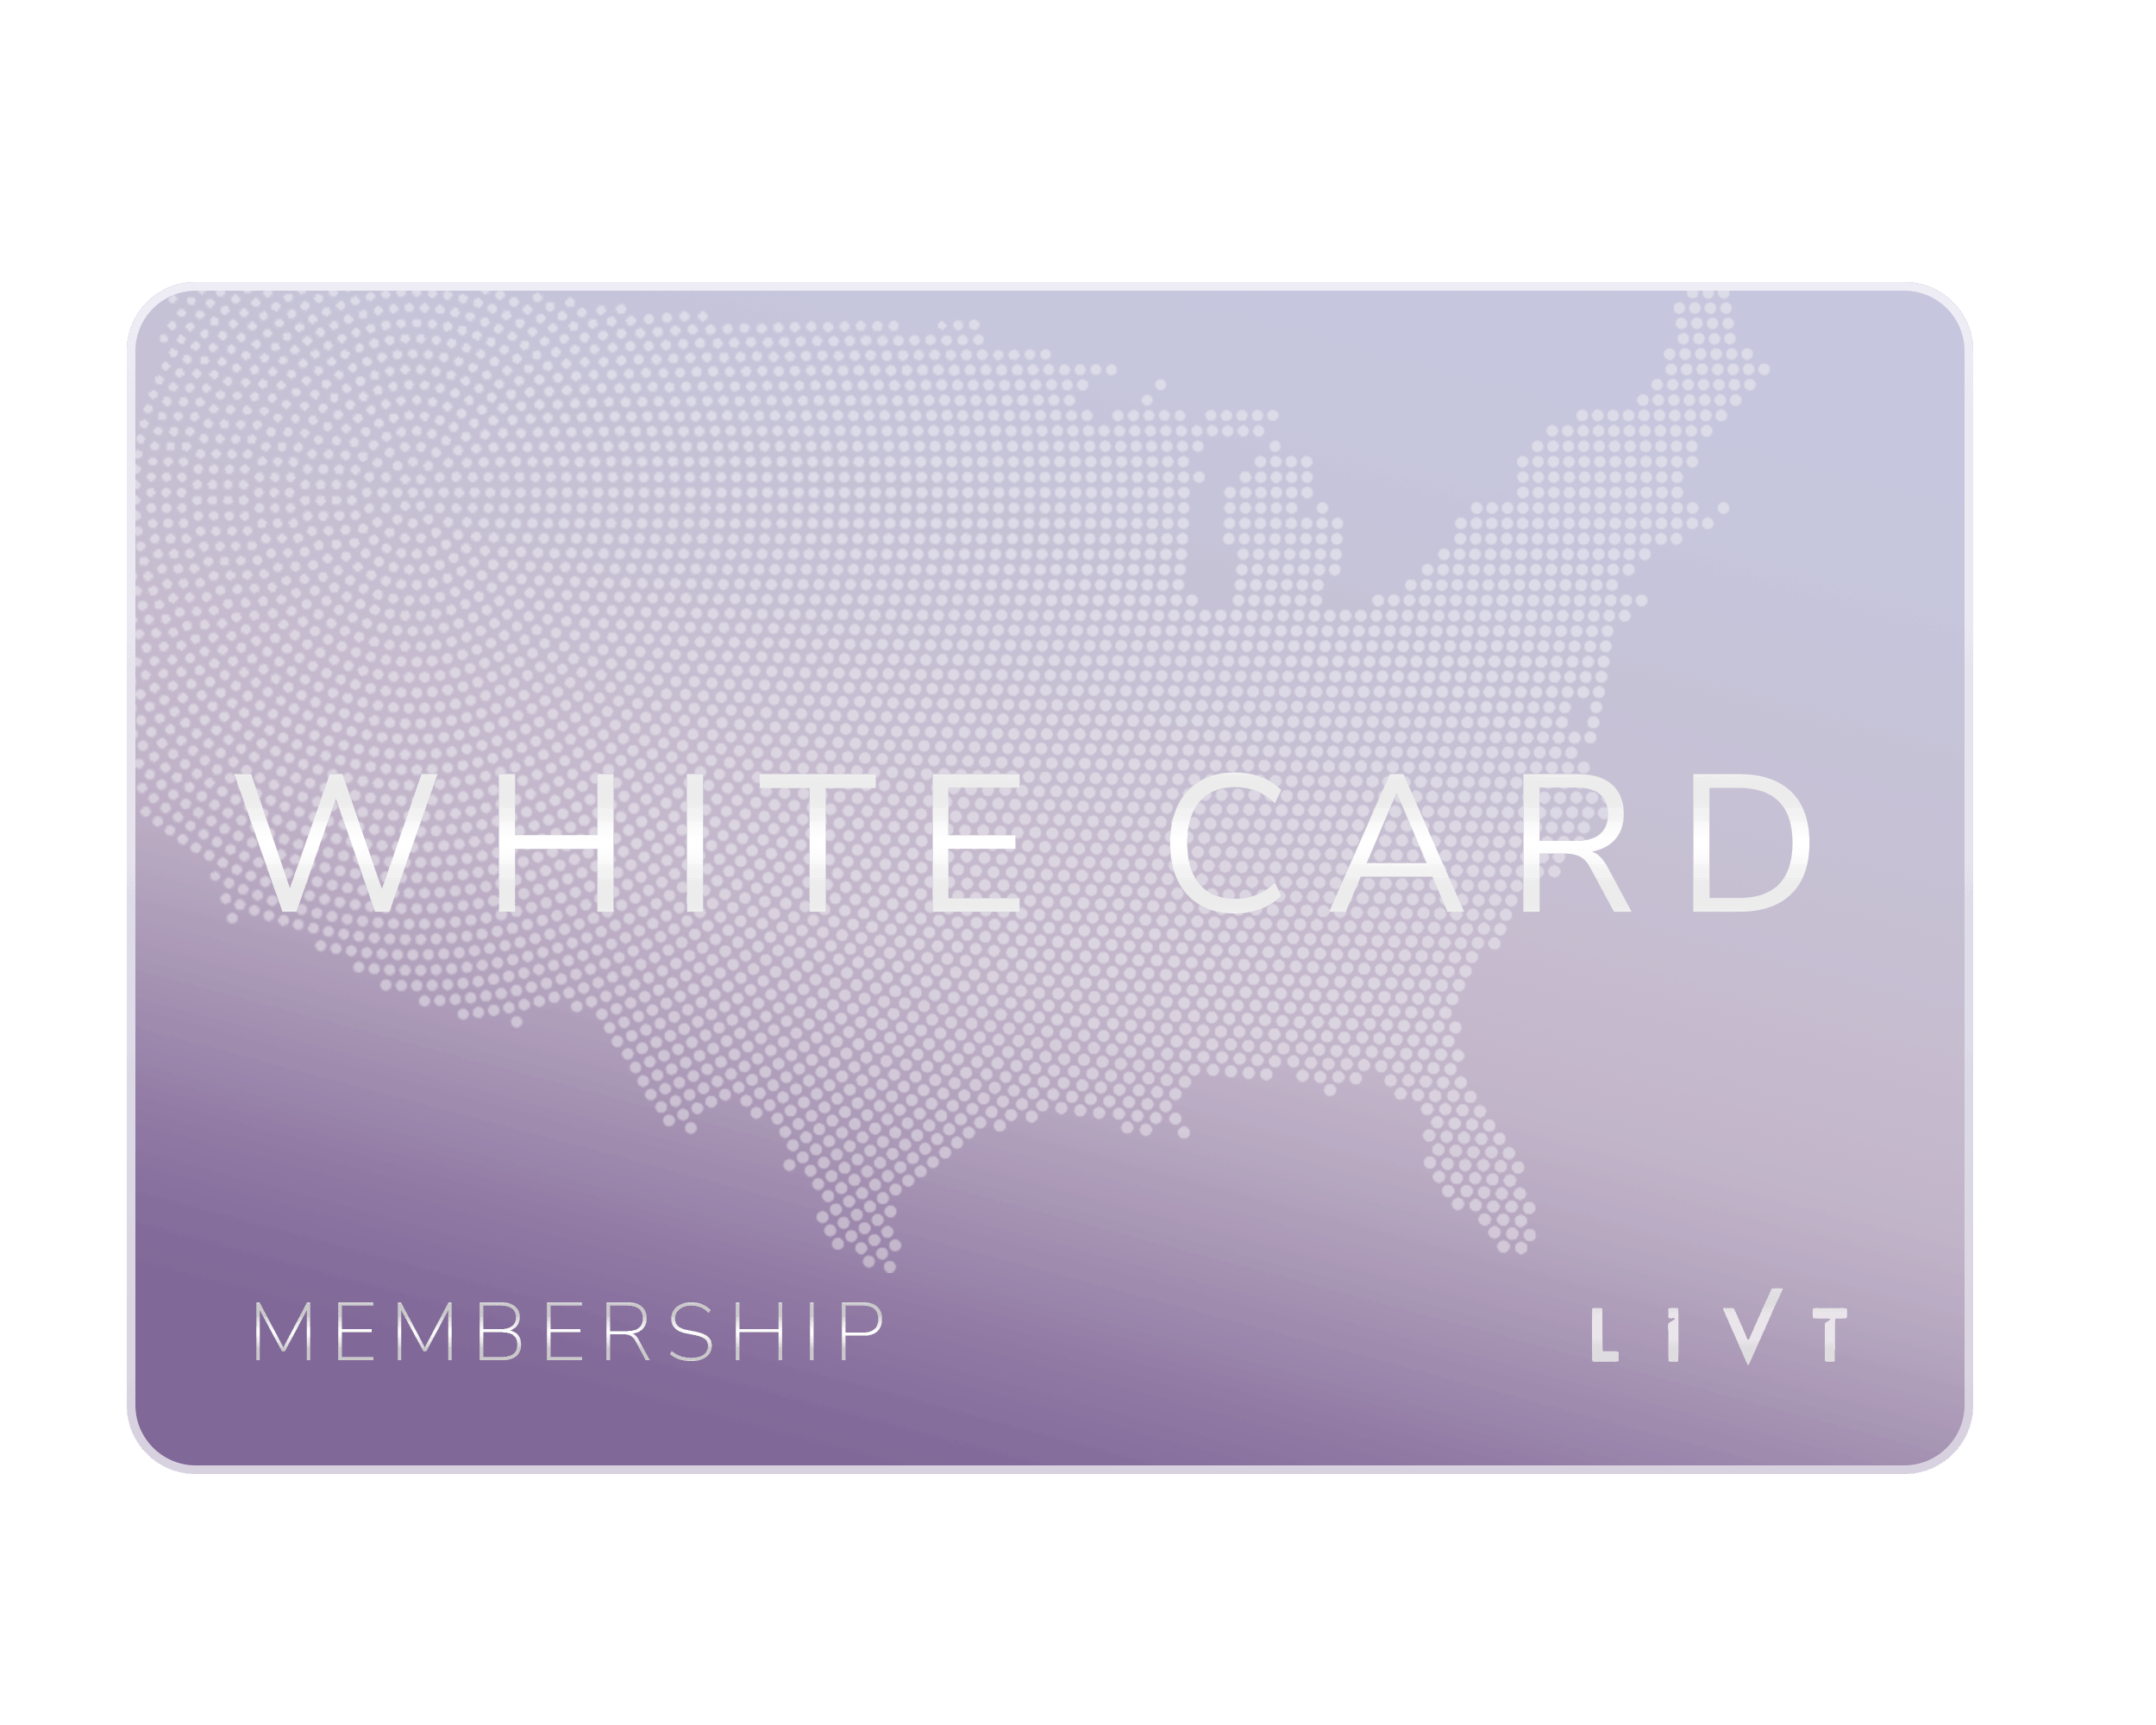 LIVT White Card